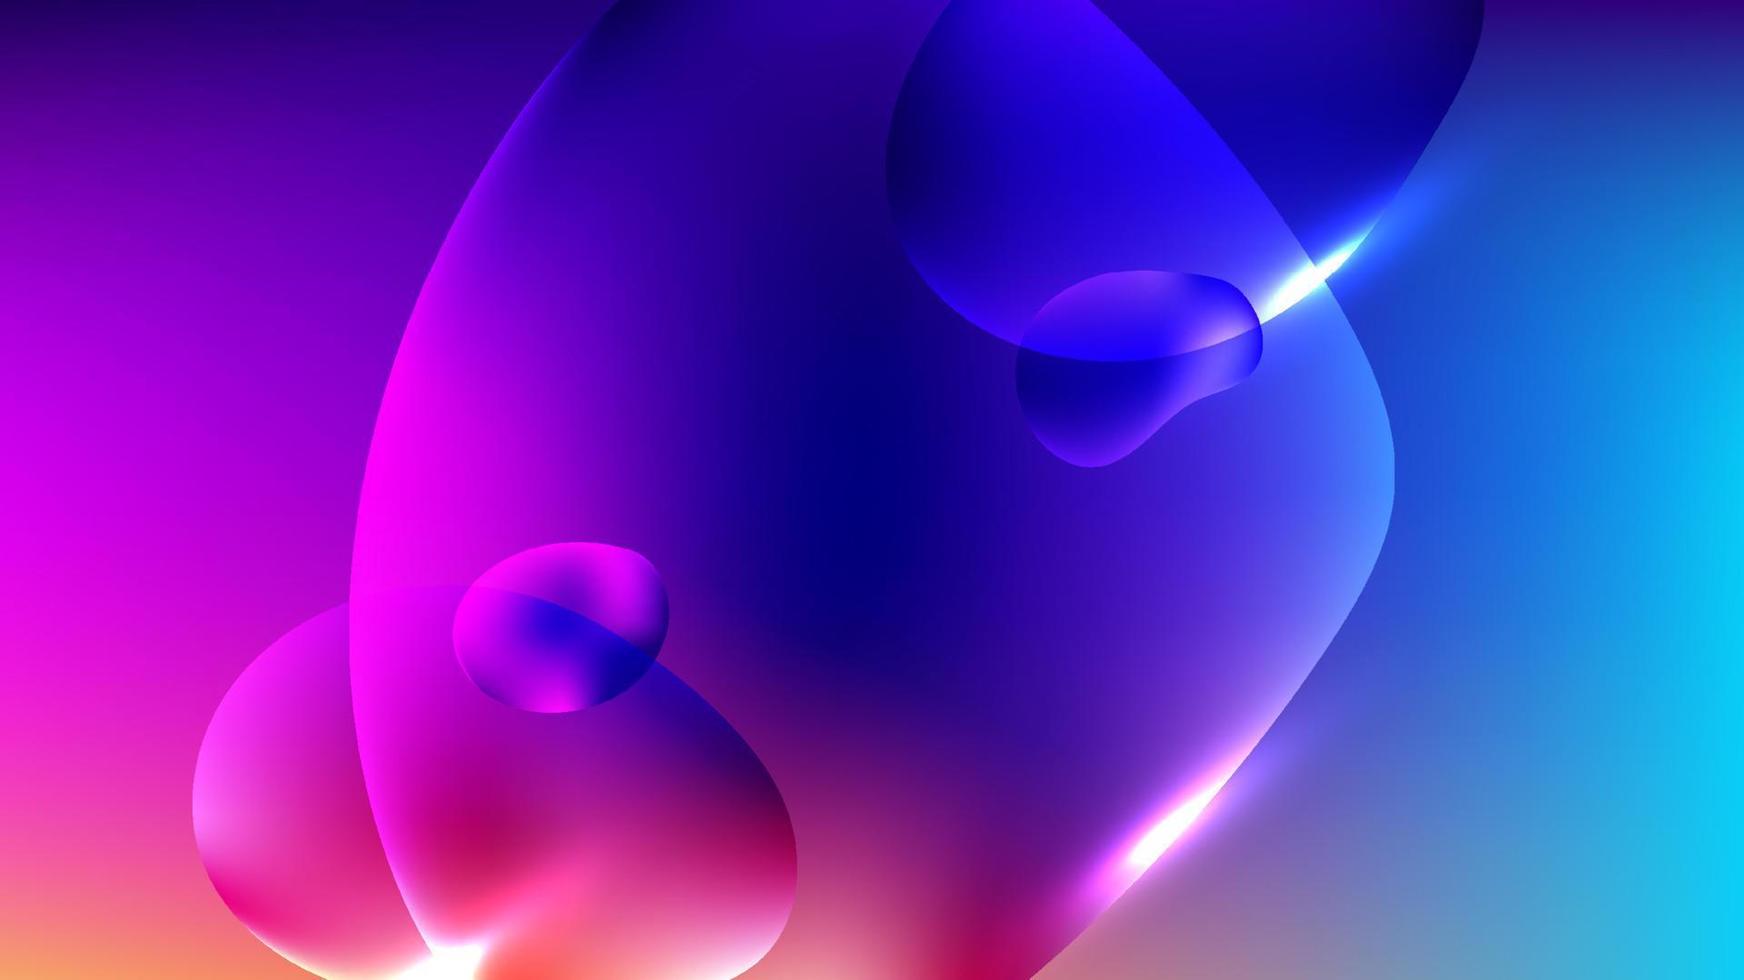 abstrakt flytande bubblor vibrerande lutning former på blå och rosa bakgrund med belysning effekt vektor